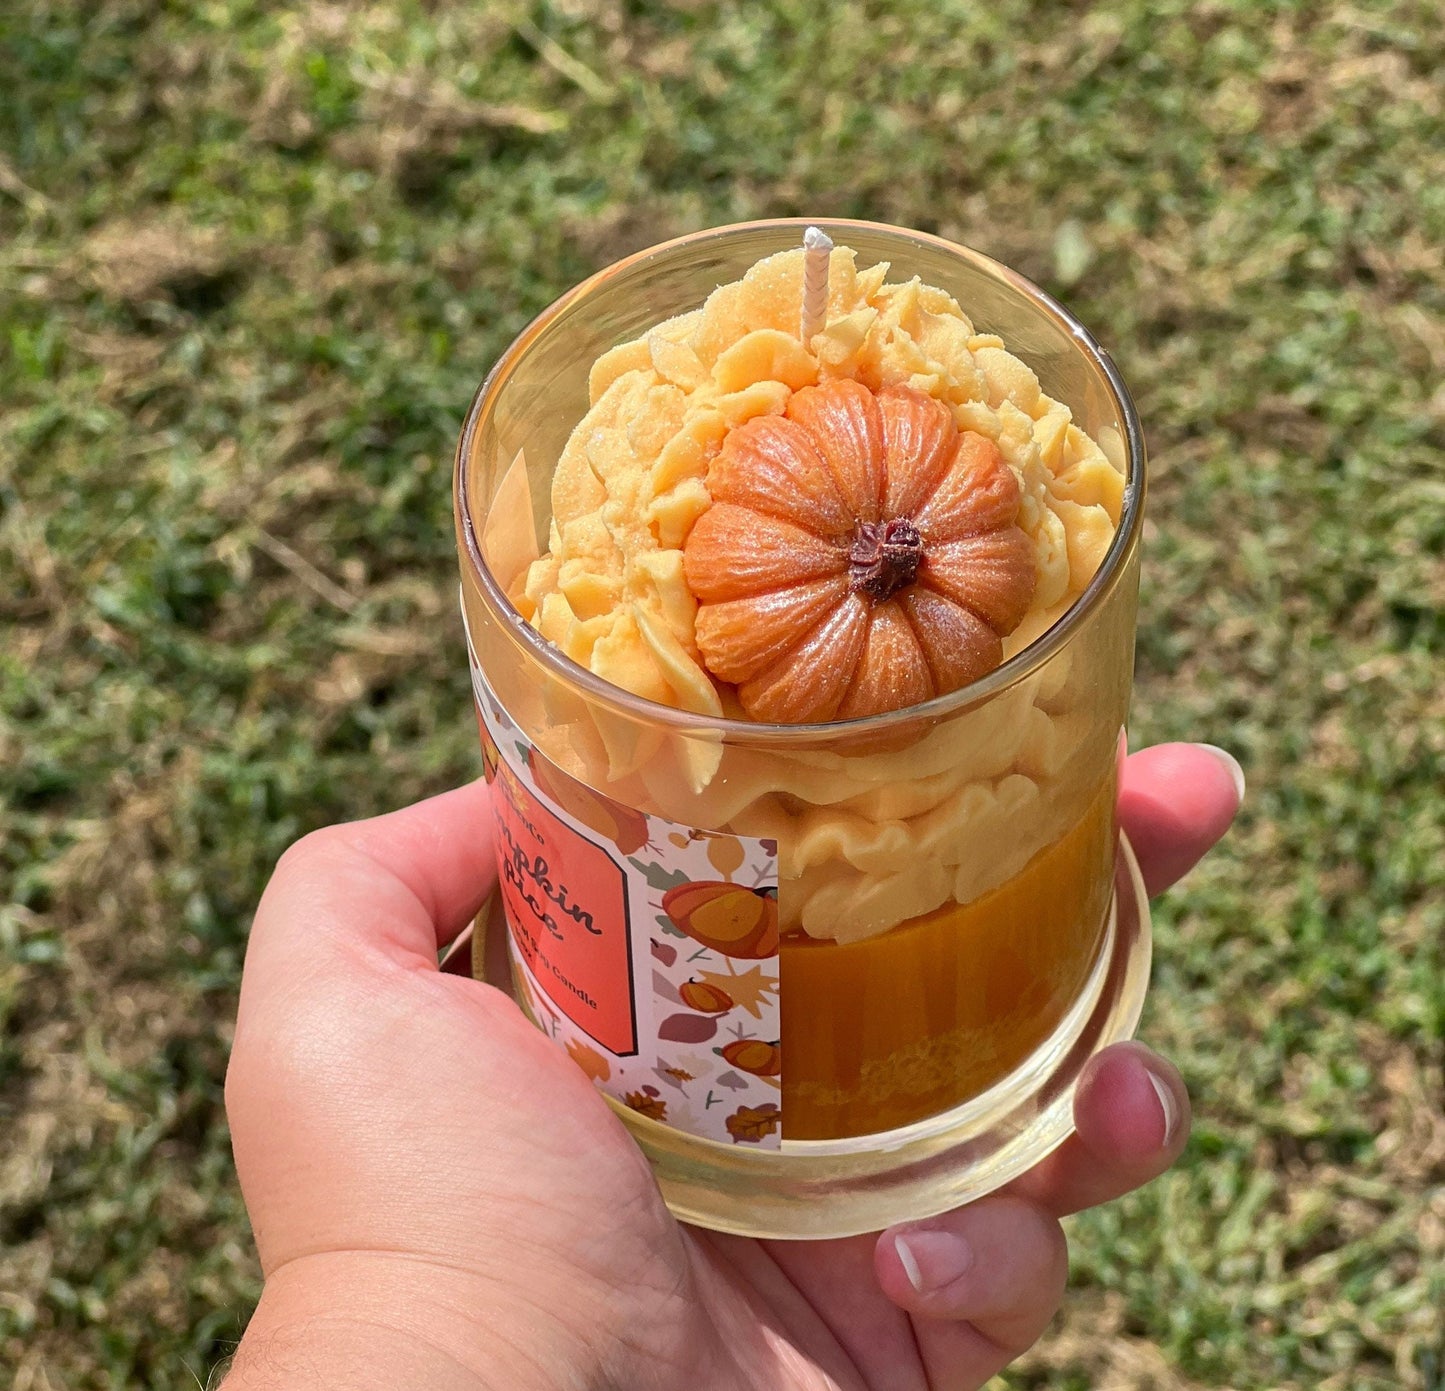 Pumpkin Spice Specialty Candle - SunHavenCo